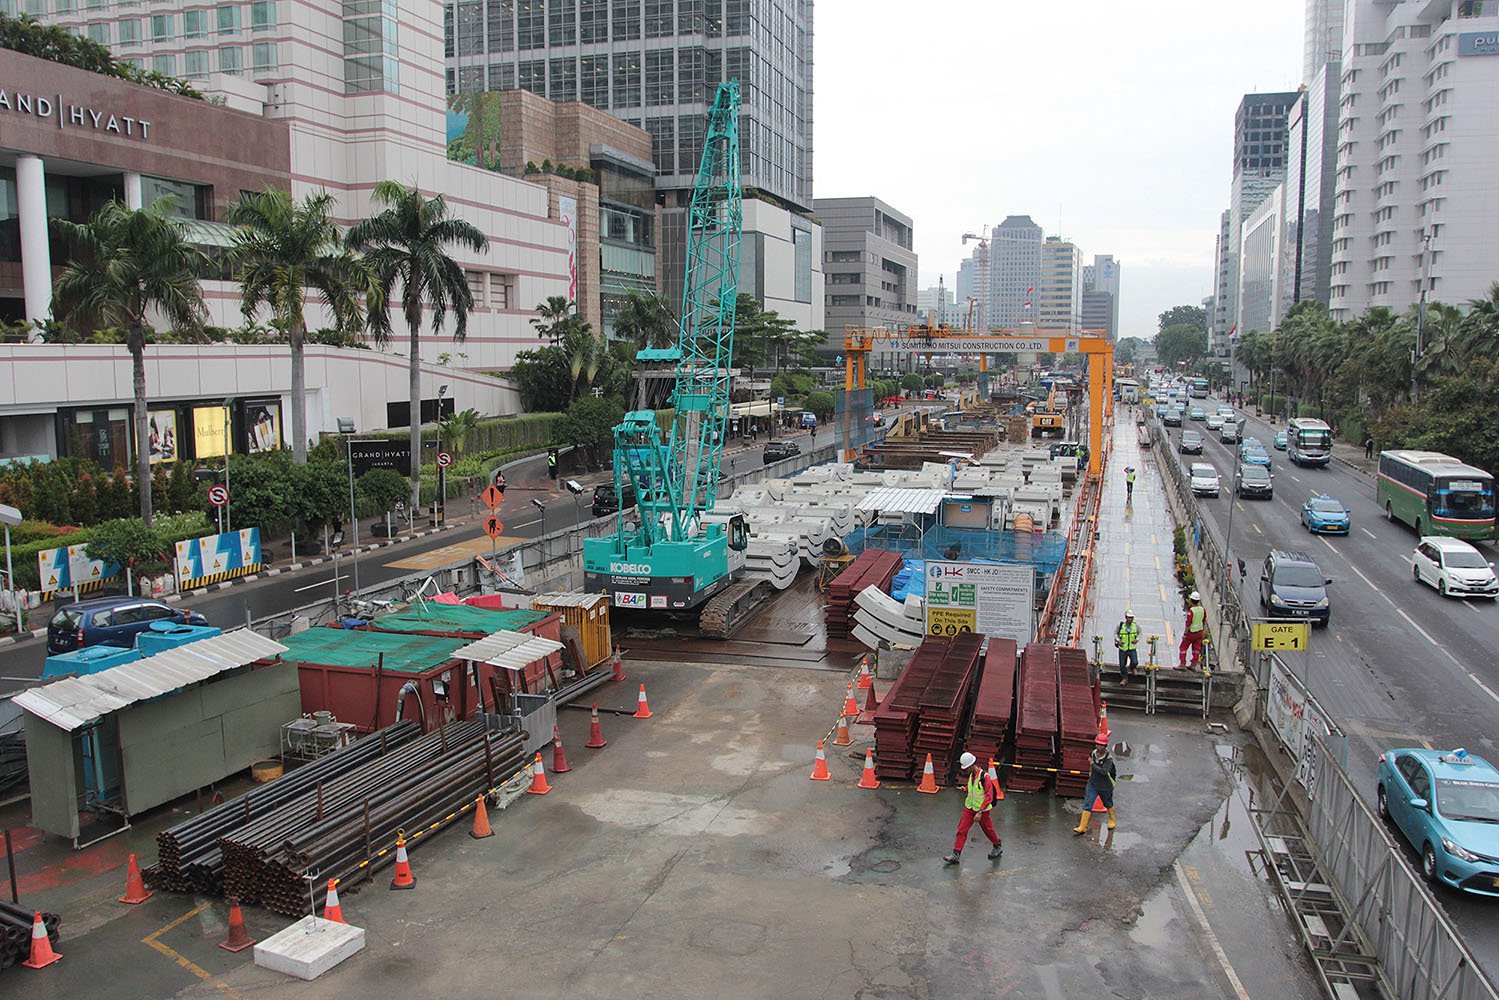 Suasana proyek pembangunan kereta massal atau Mass Rapid Transit (MRT) di atas permukaan tanah, kawasan Bundaran Hotel Indonesia, Jakarta, Rabu (14/12).